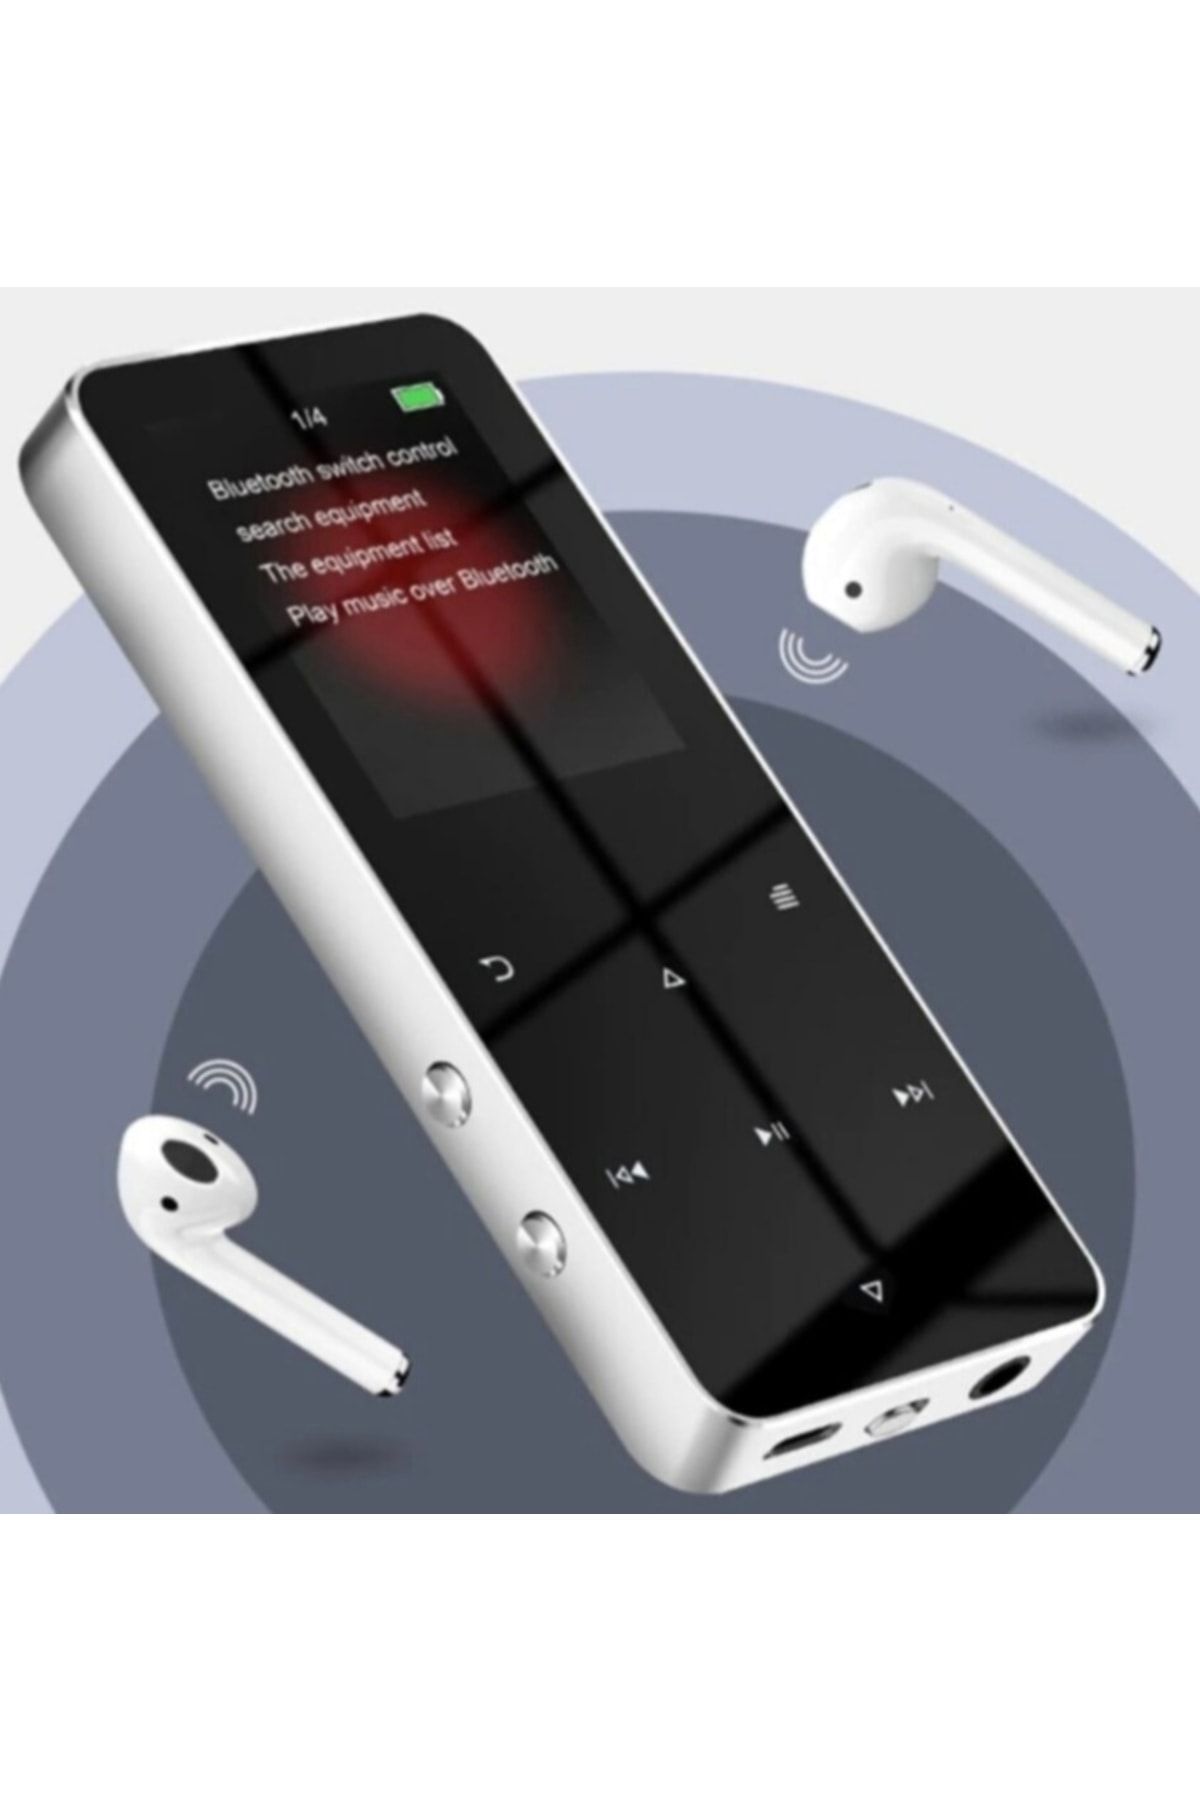 JUNGLEE Bluetooth Lu Mp3 Mp4 Çalar Fm Radyolu Şarjlı Mp4 Player Dahili Hoparlör 8gb Hafızalı Ses Kaydı